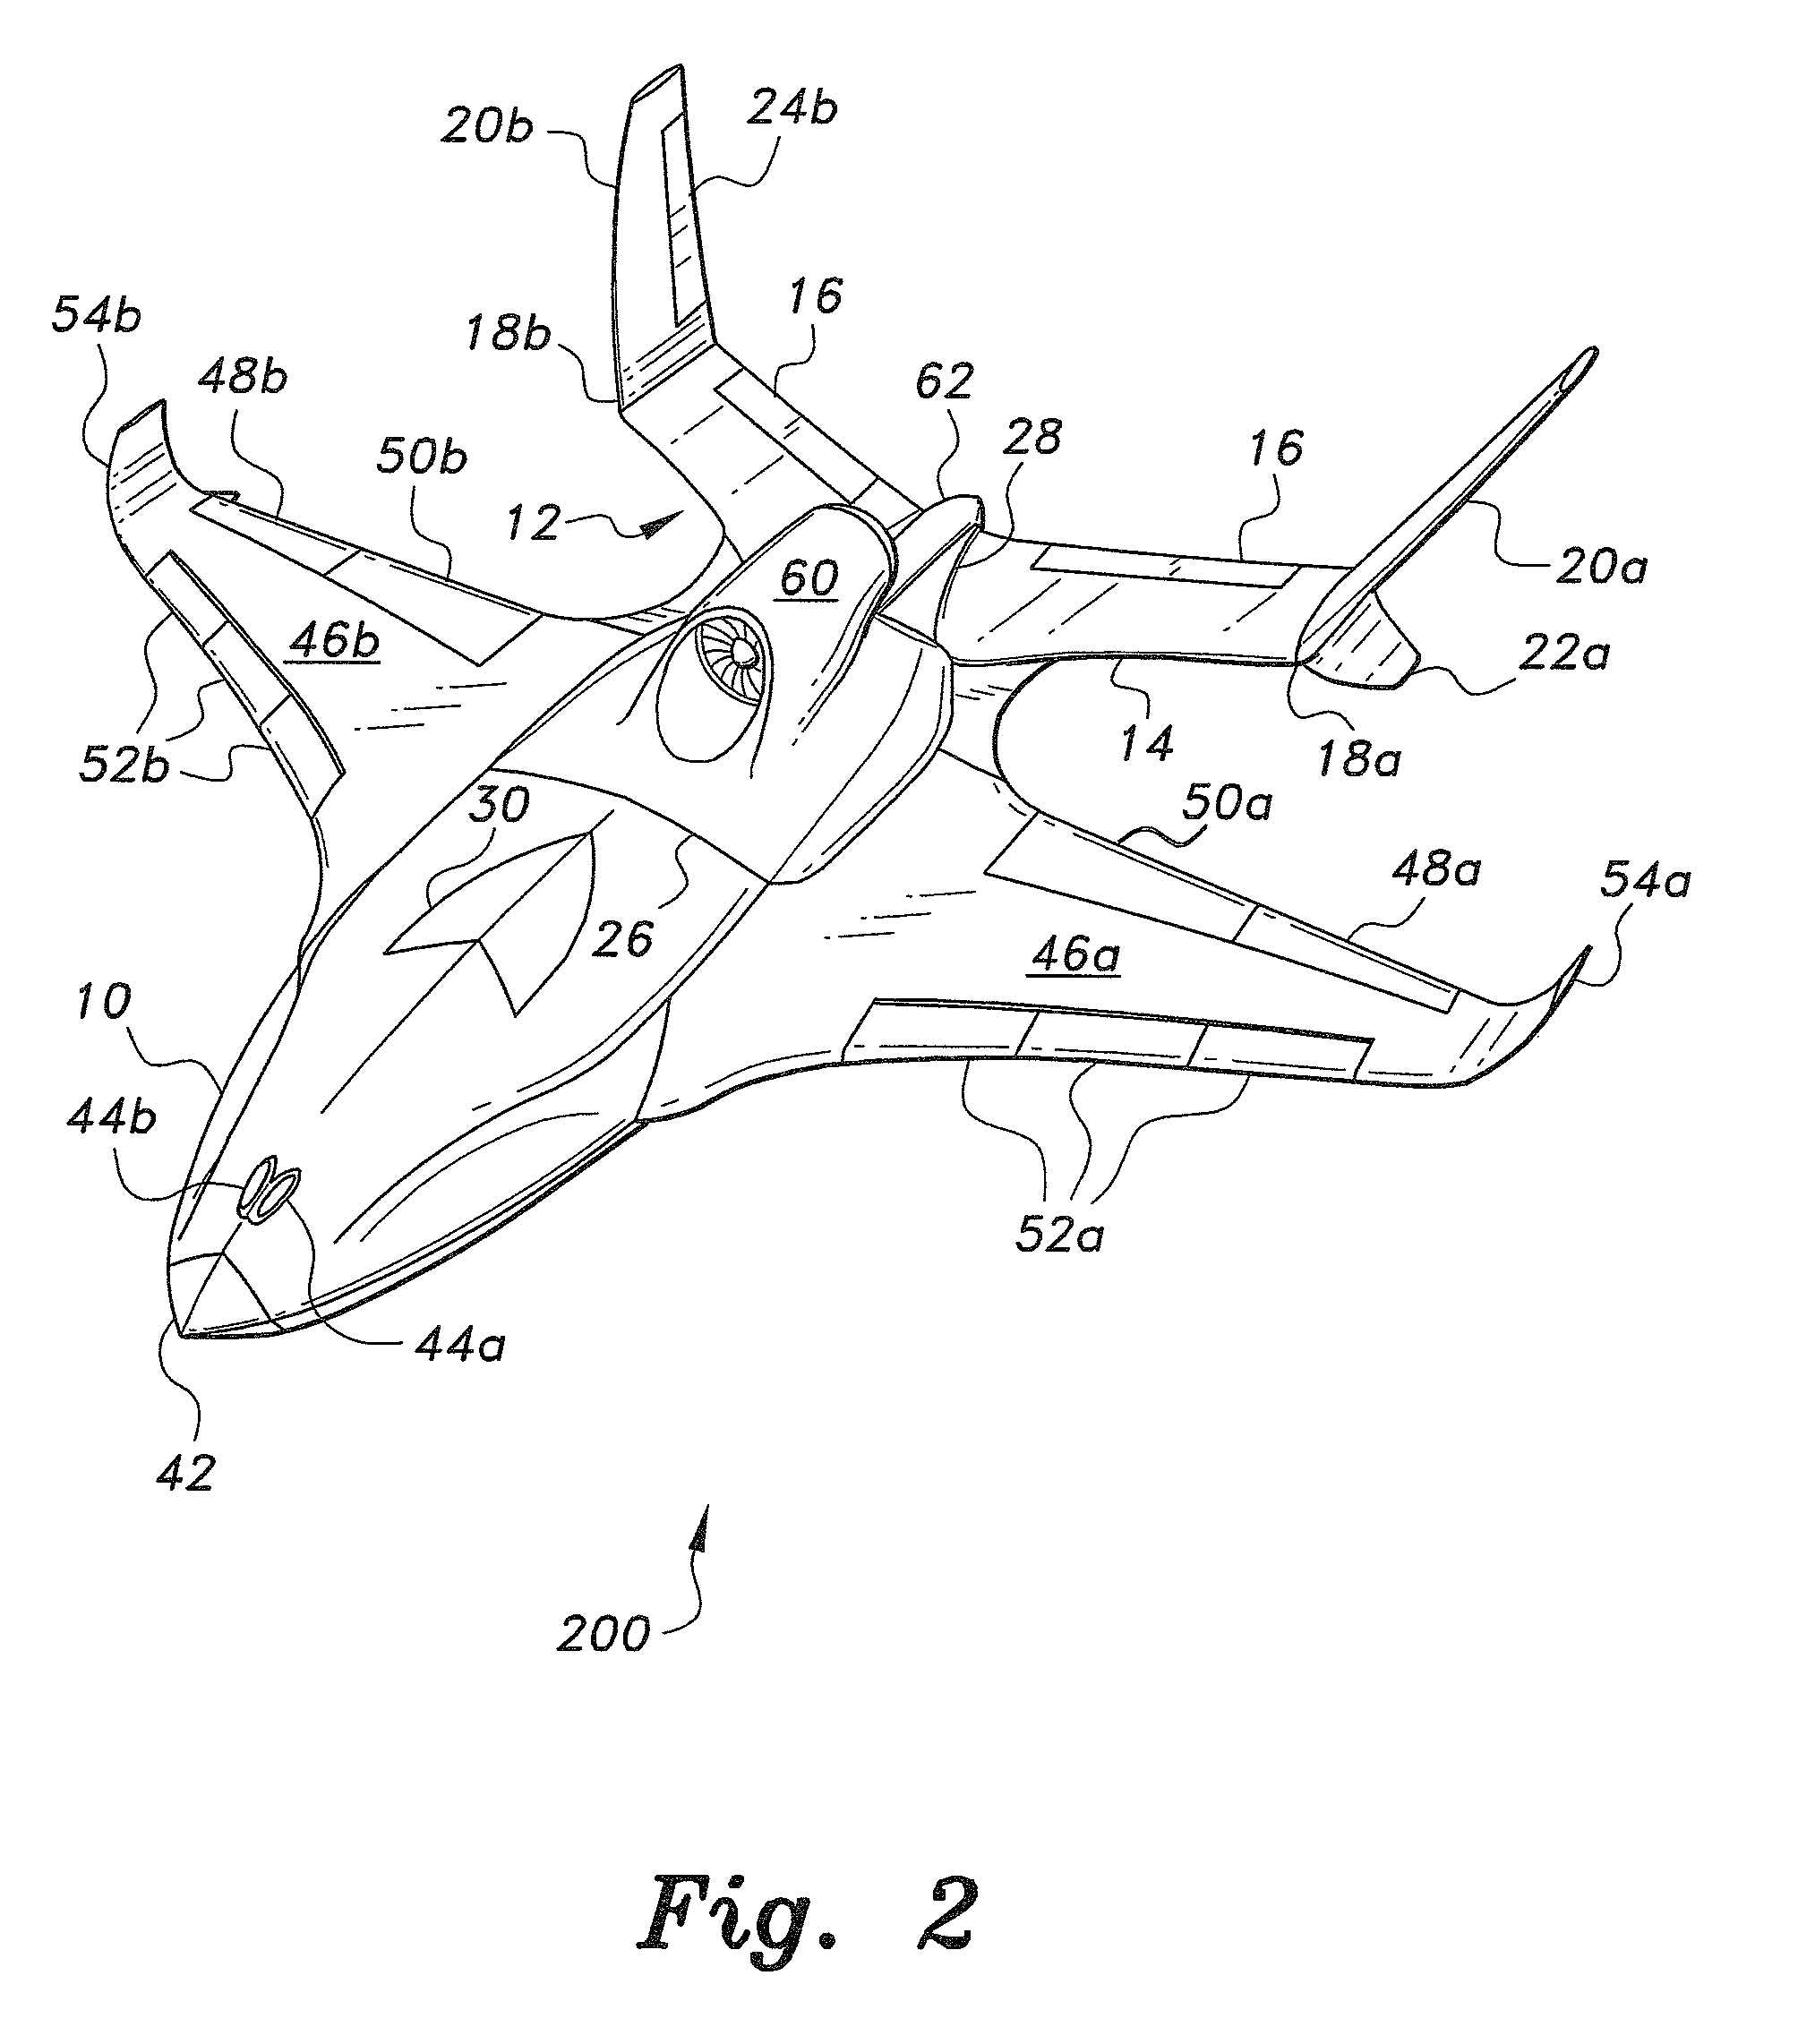 Modular aircraft system